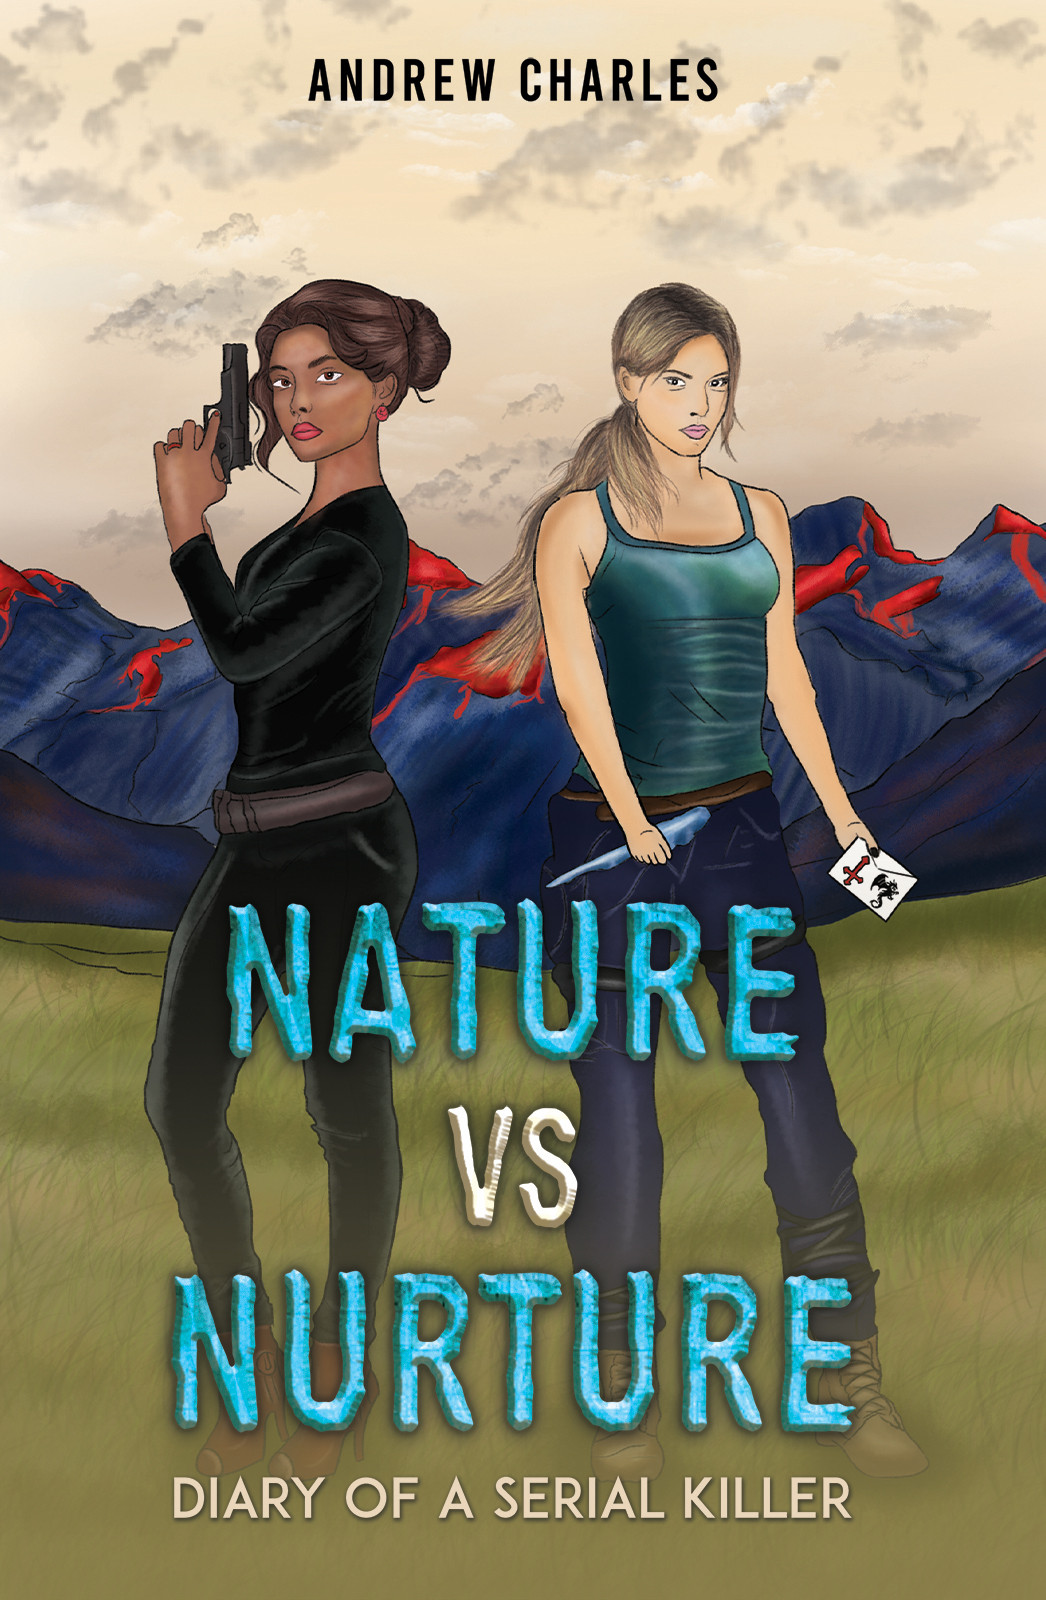 Nature vs Nurture